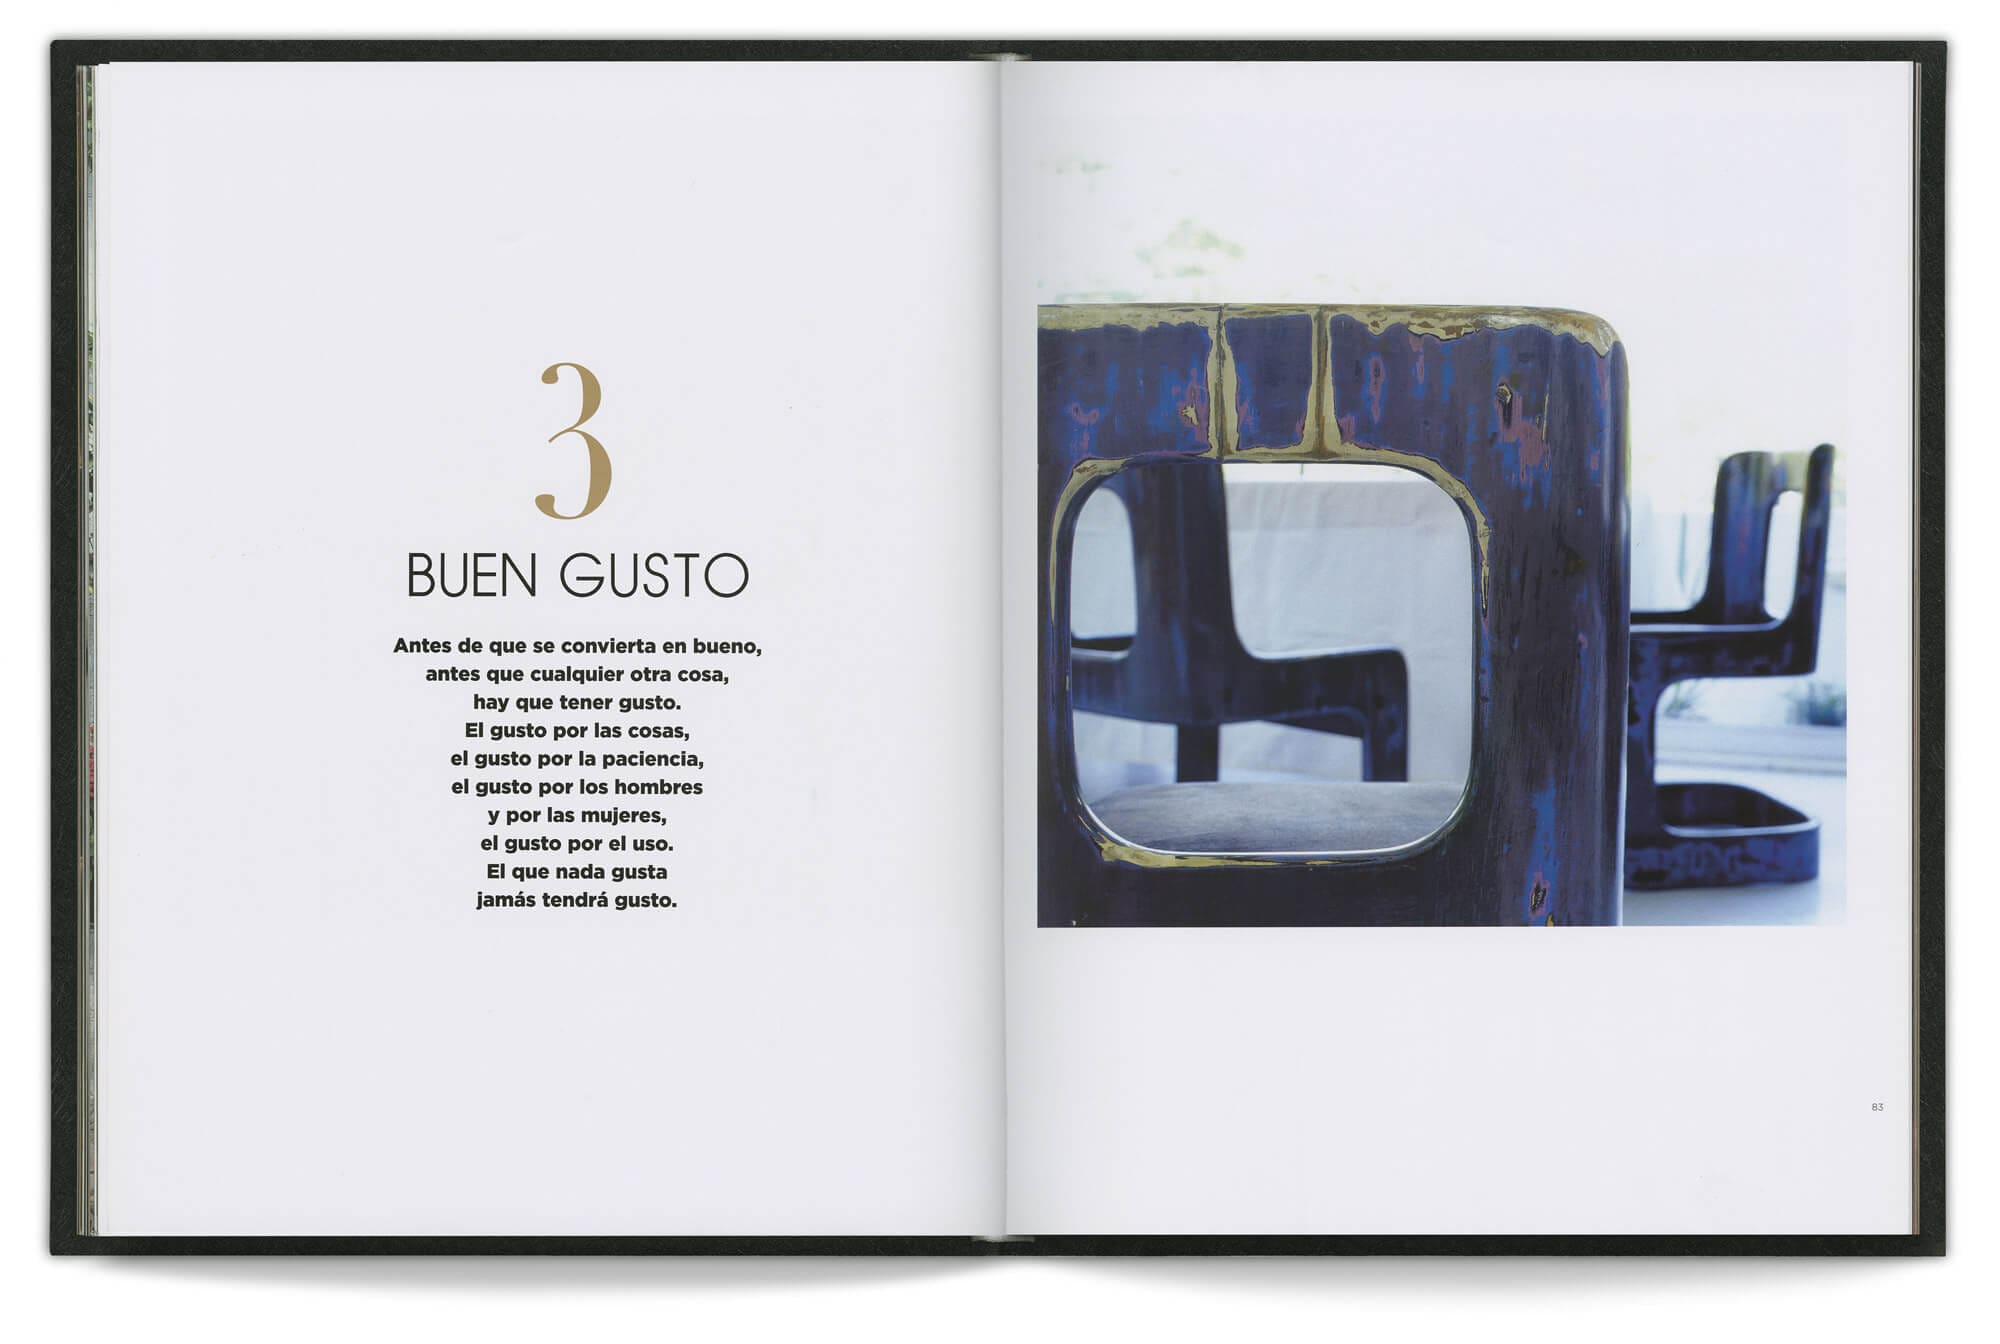 double page du livre Chic by accident introduisant le chapite 3 sur le "bon gout", design Helena Ichbiah